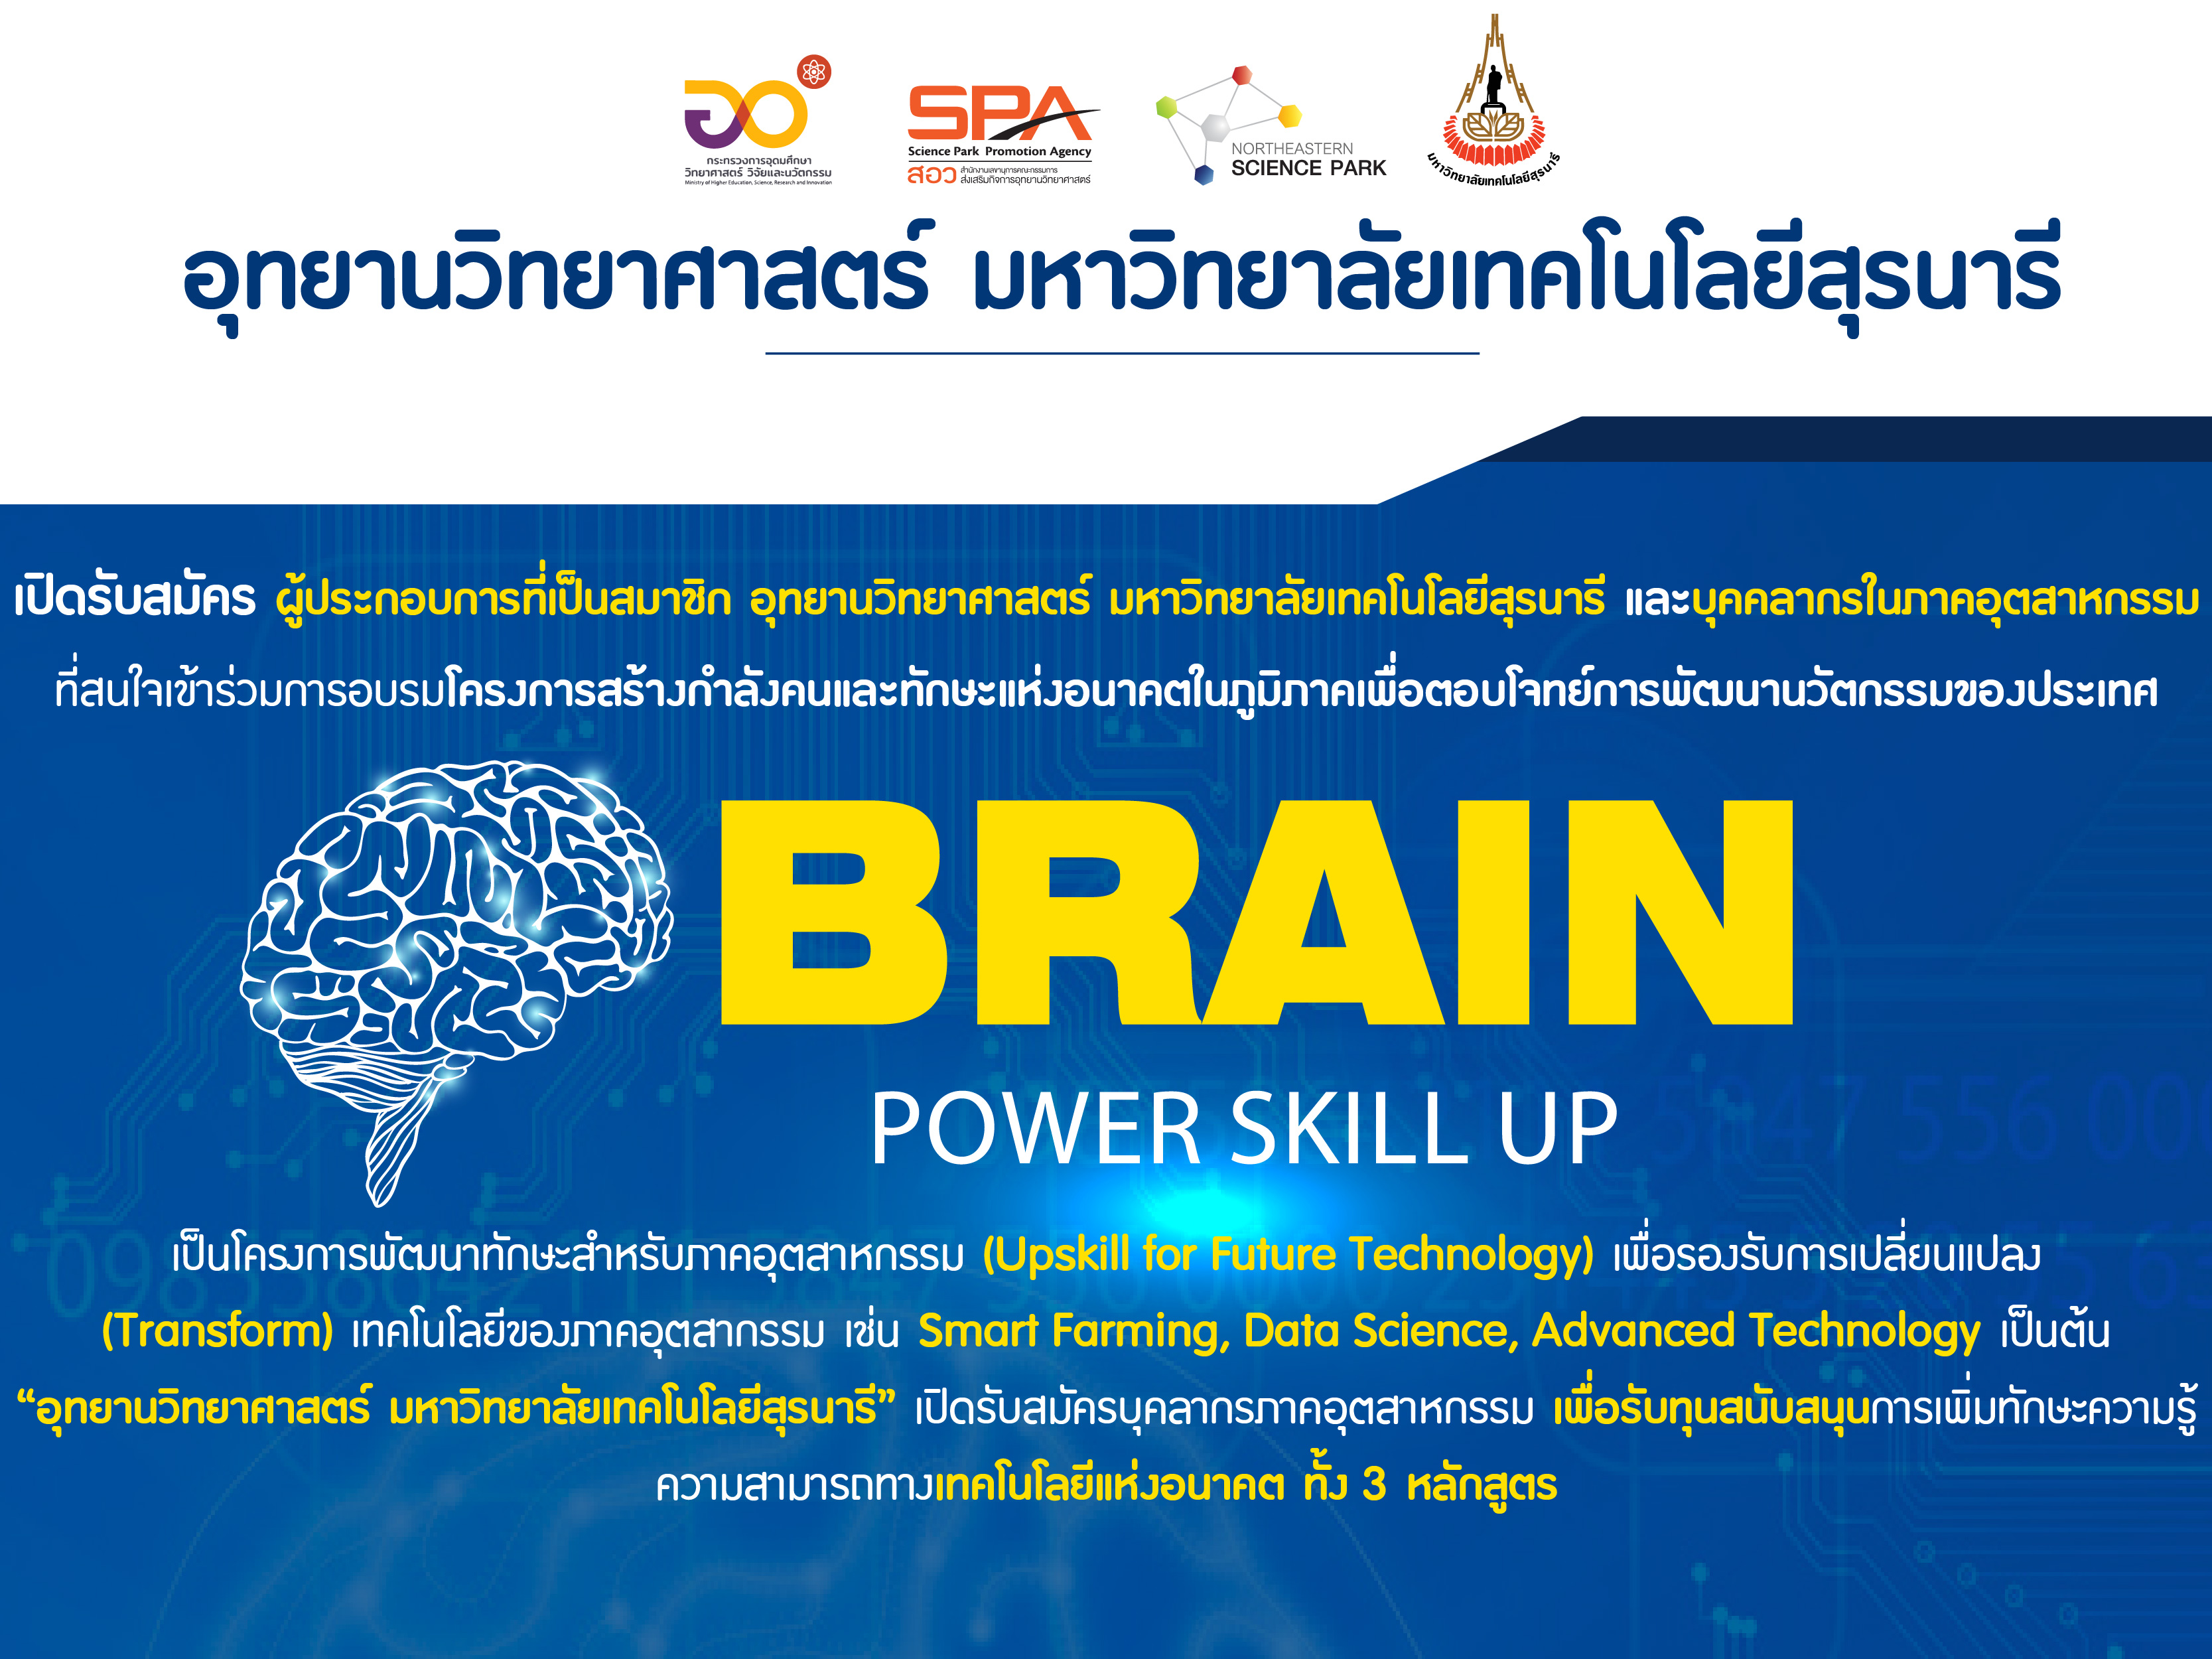 โครงการการพัฒนาความสามารถทางเทคโนโลยีของบุคลากรภาคอุตสาหกรรม Brain Power Skill Up